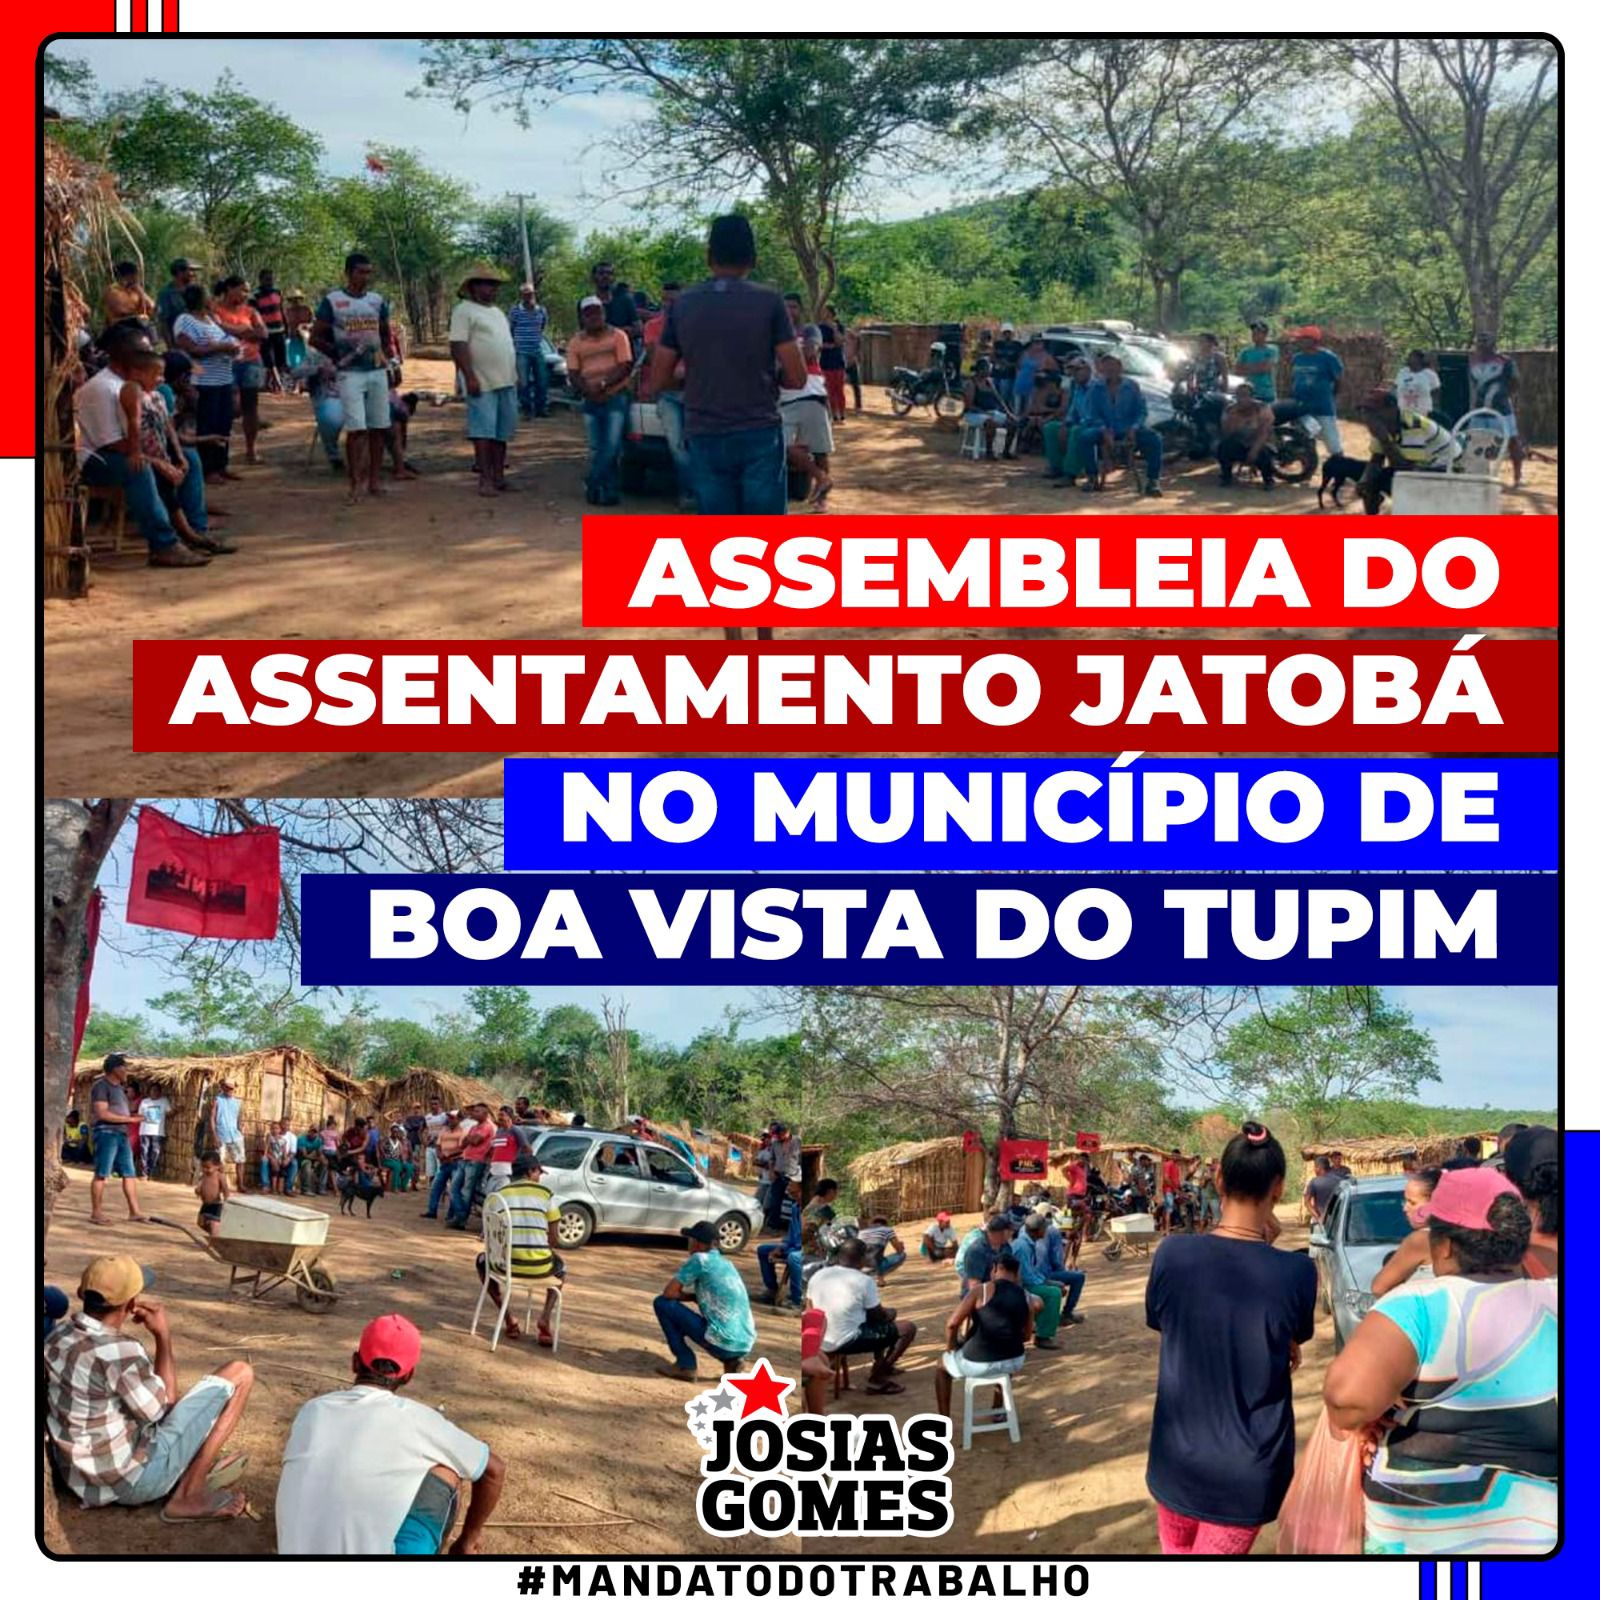 Assentamento Jatobá No Município De Boa Vista Do Tupim Participará Do Encontro Regional Da Central Das Associações Da Bahia.